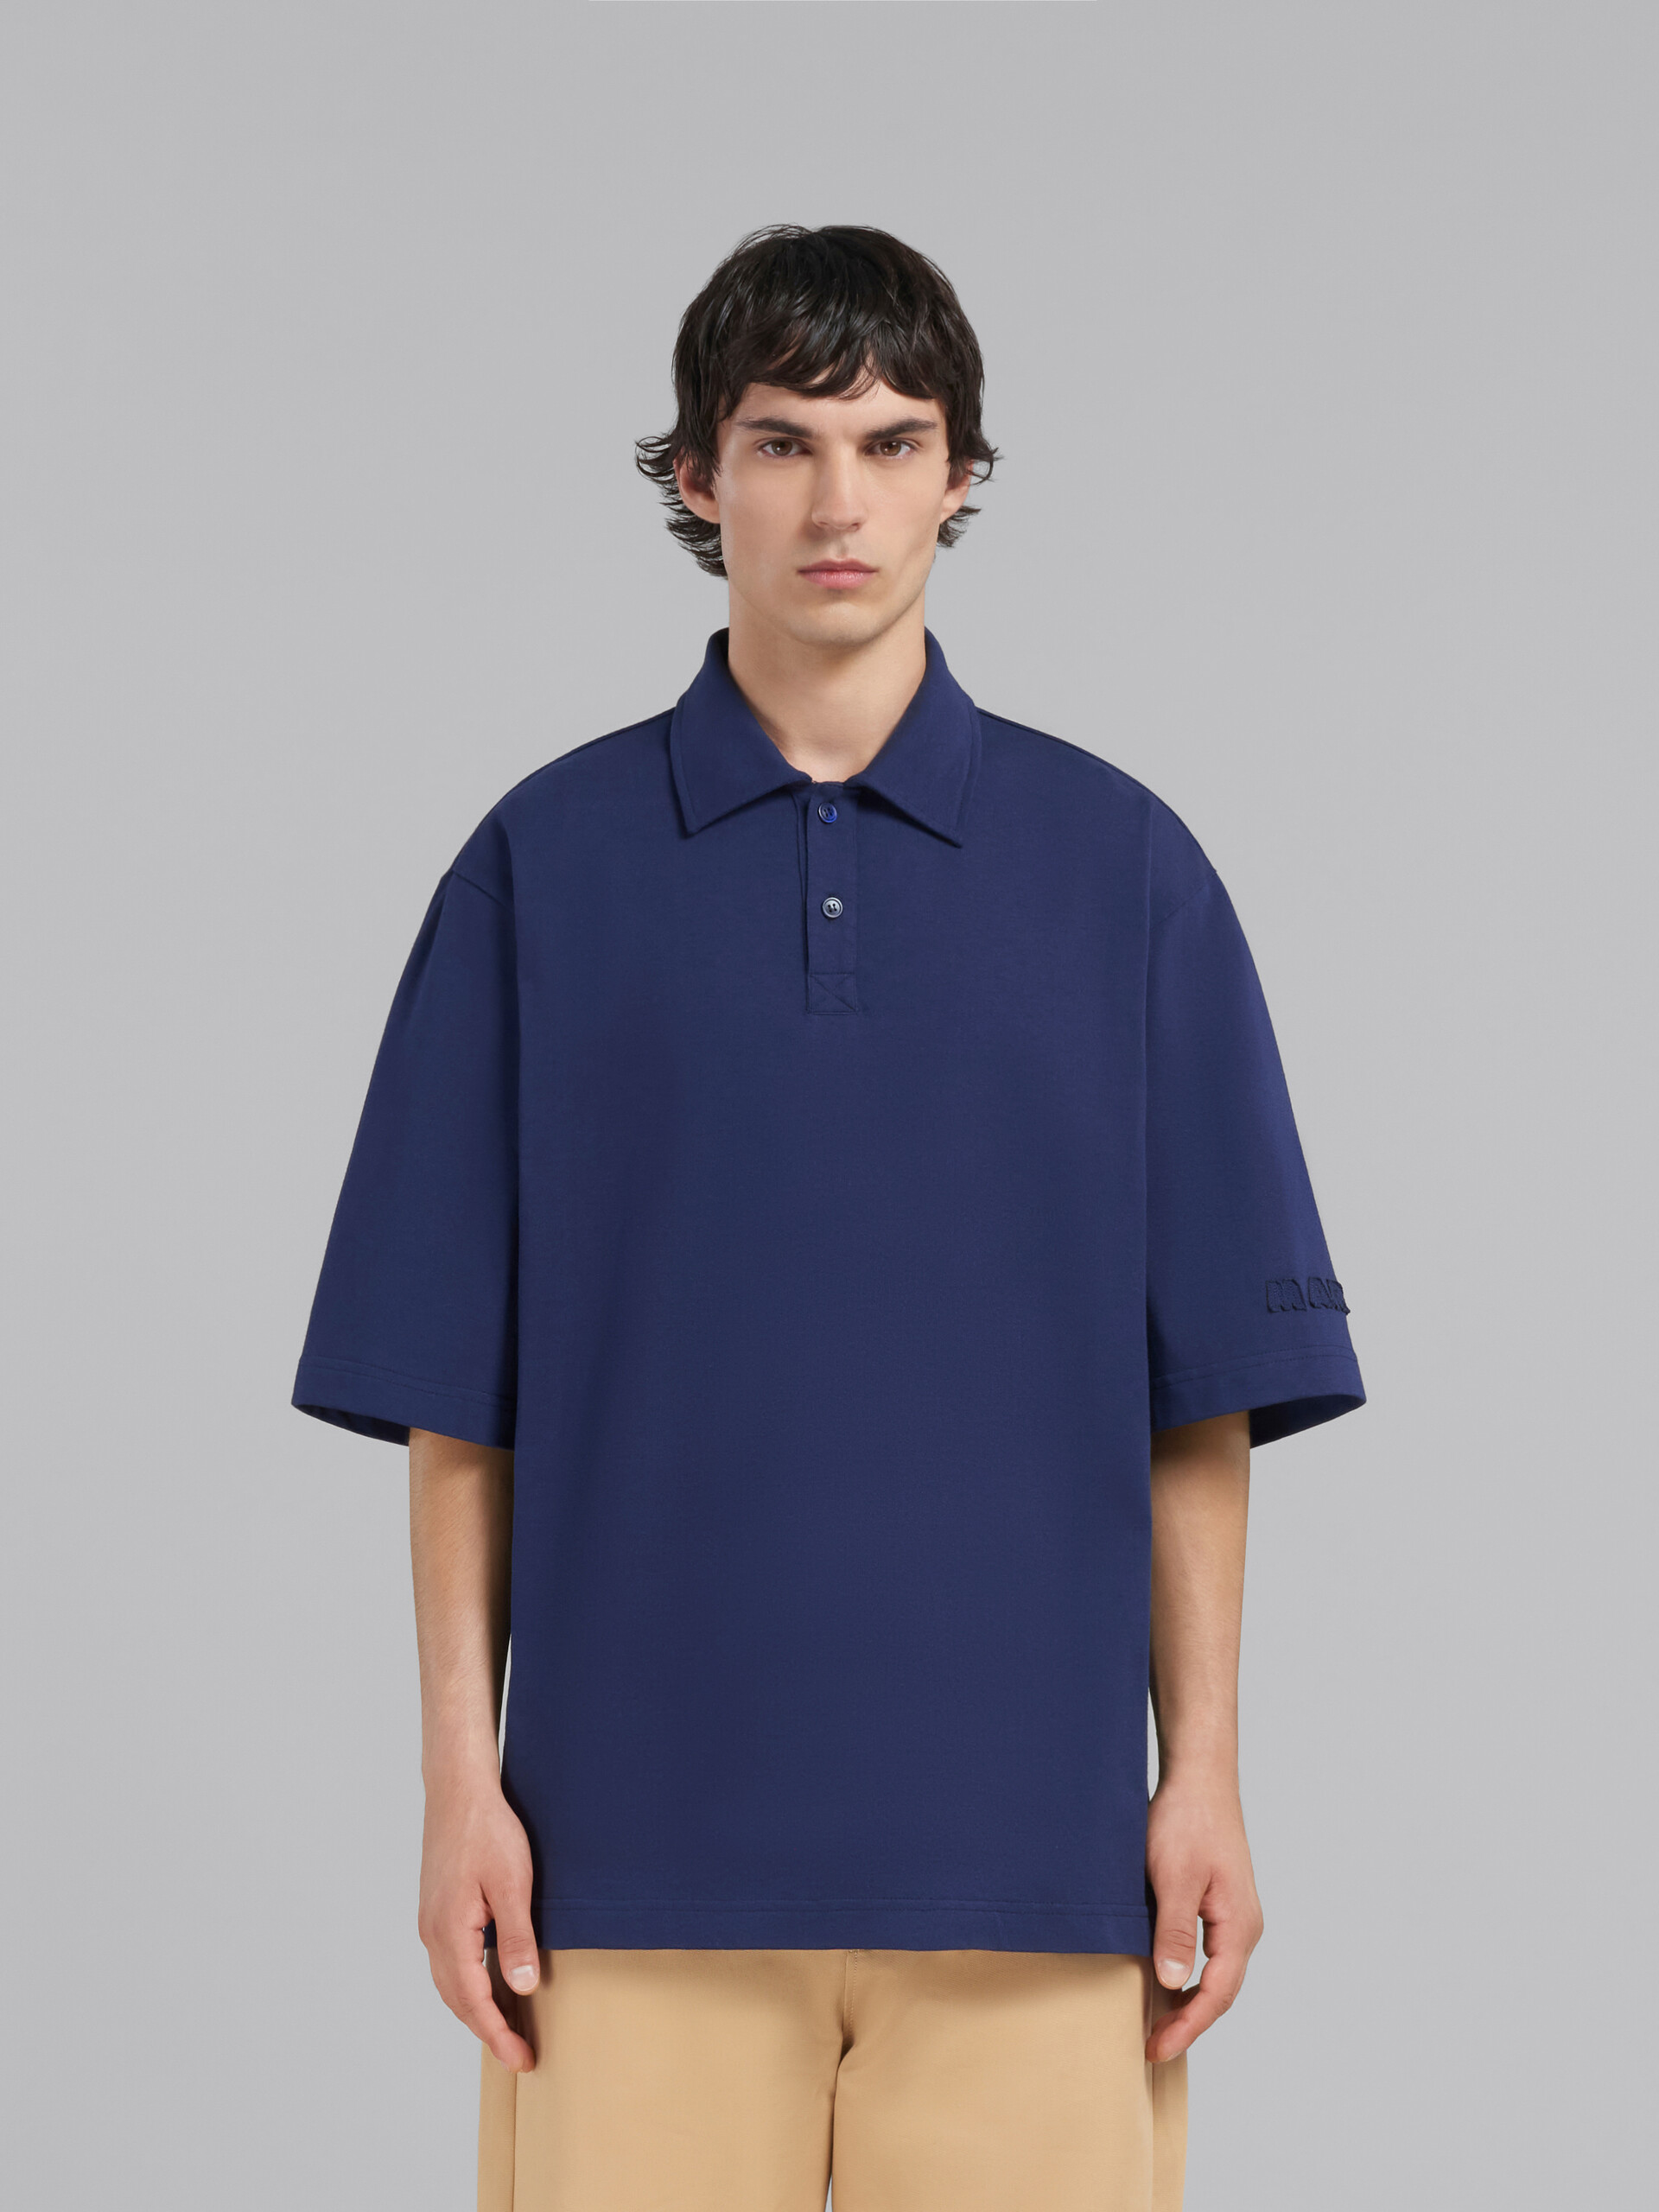 ブルー マルニパッチ付き オーガニックコットン製オーバーサイズポロシャツ - ポロシャツ - Image 2